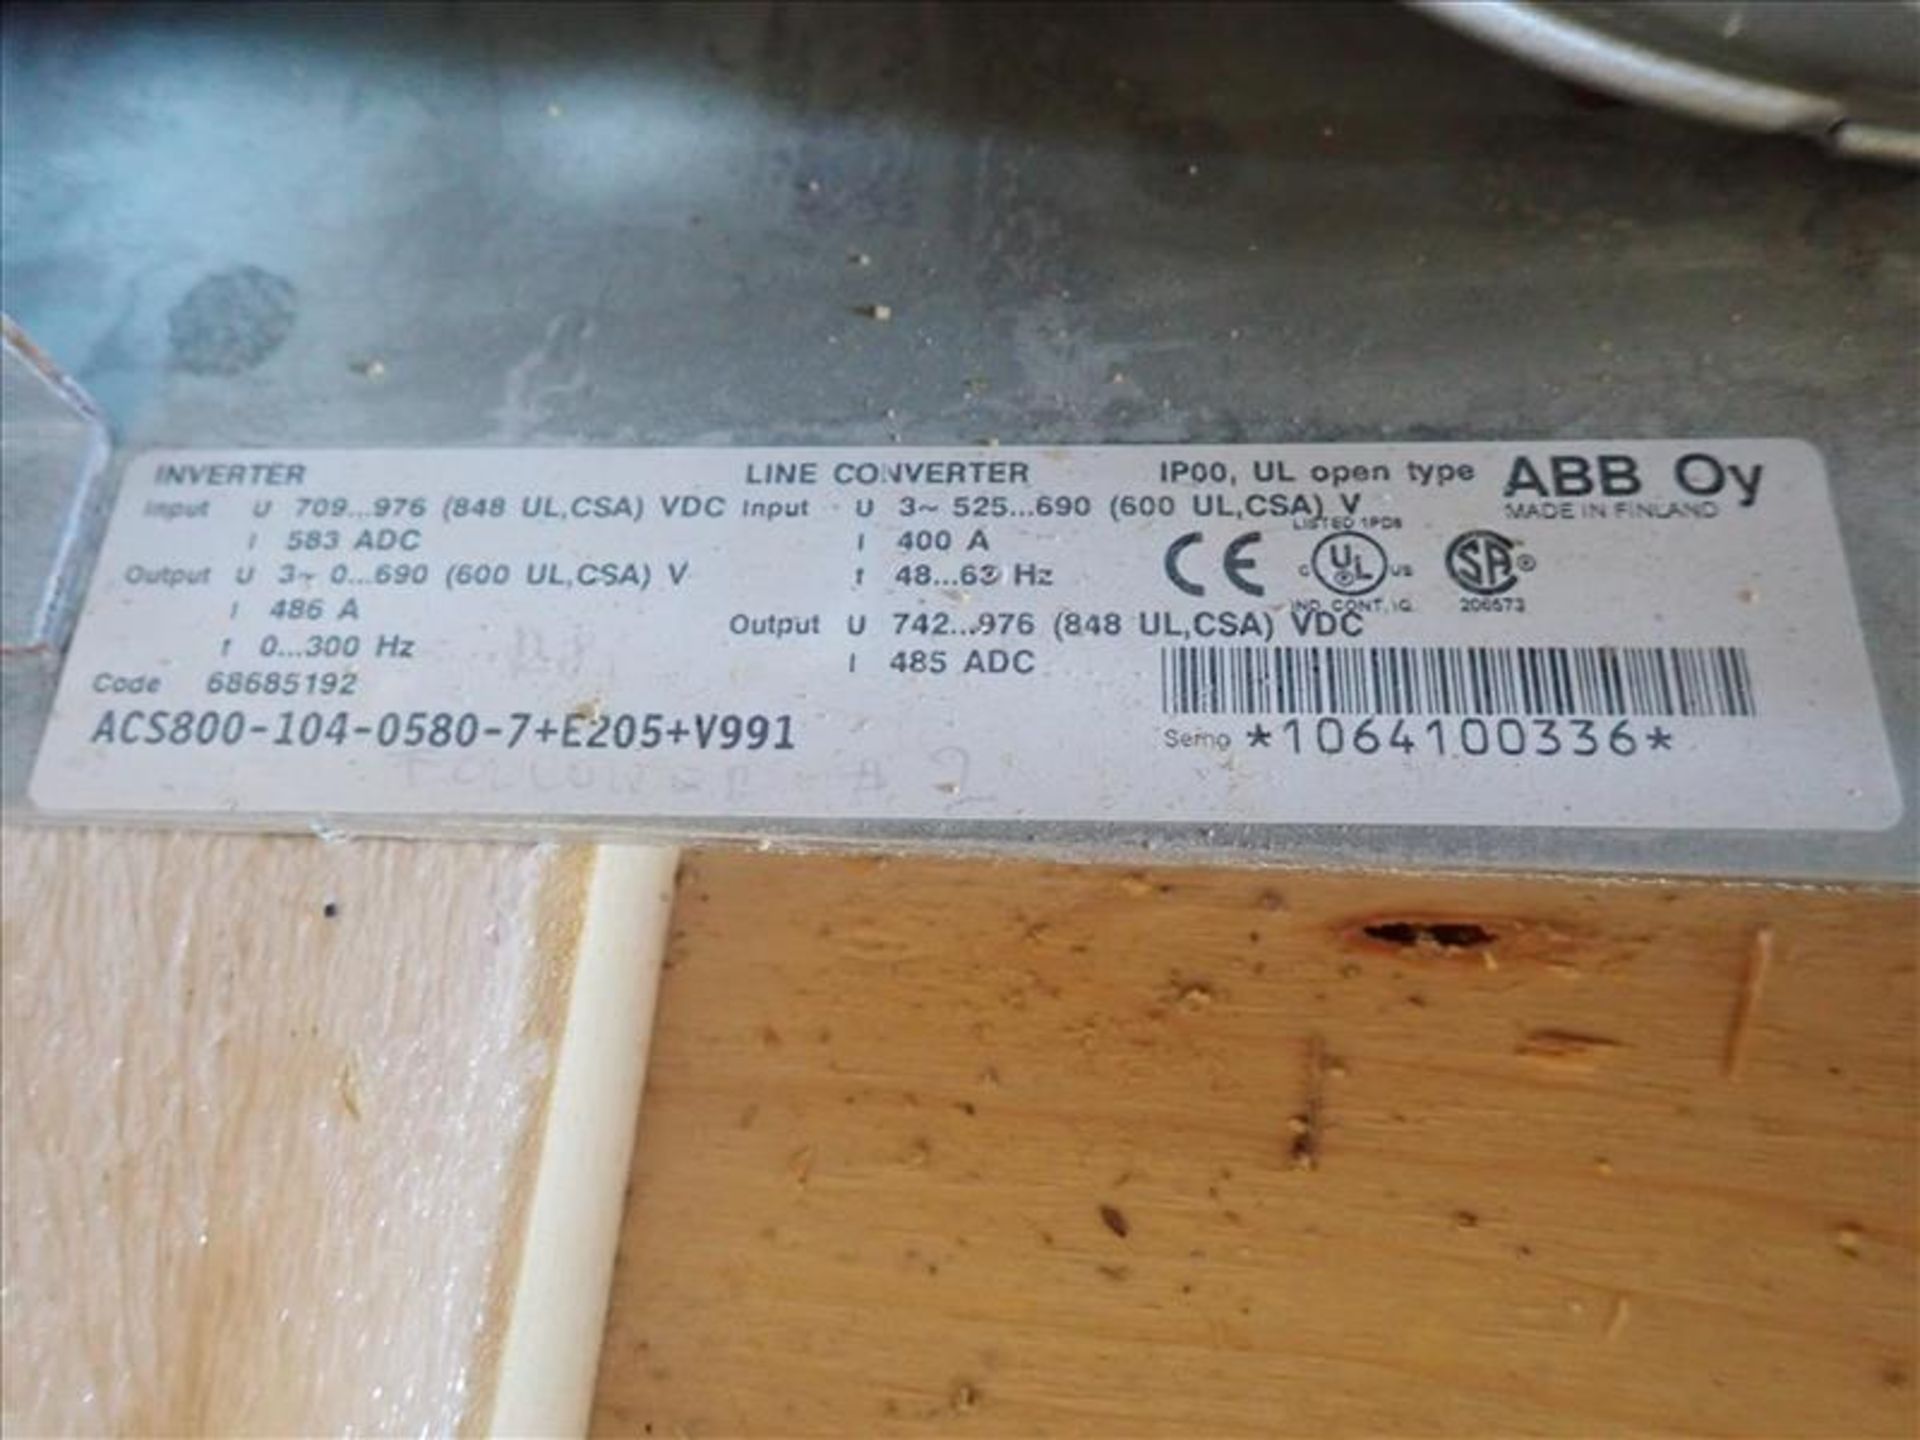 ABB Inverter/Line Converter, mod. ACS800-104-0580-7+E205+V991, 600V, 486A, 300Hz, 3Ph (Tag No. 4383) - Image 2 of 2